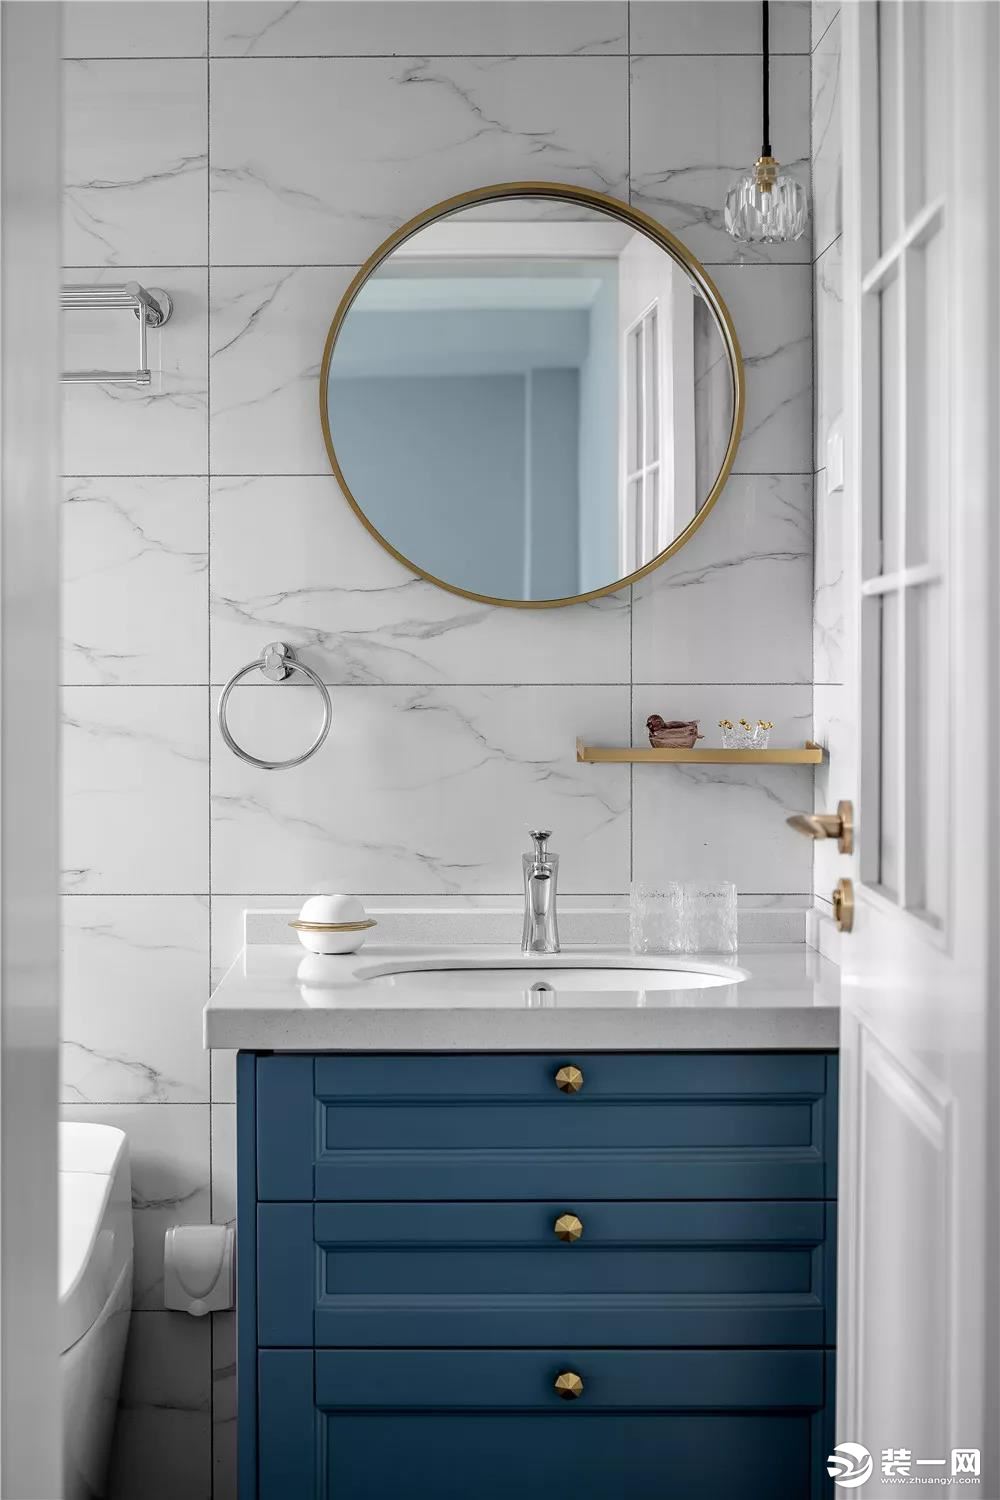 卫生间内铺贴了白色的大理石瓷砖，这款深蓝色的浴室柜让卫生间看起来更有格调。浴室镜和灯具都加入了铜质金